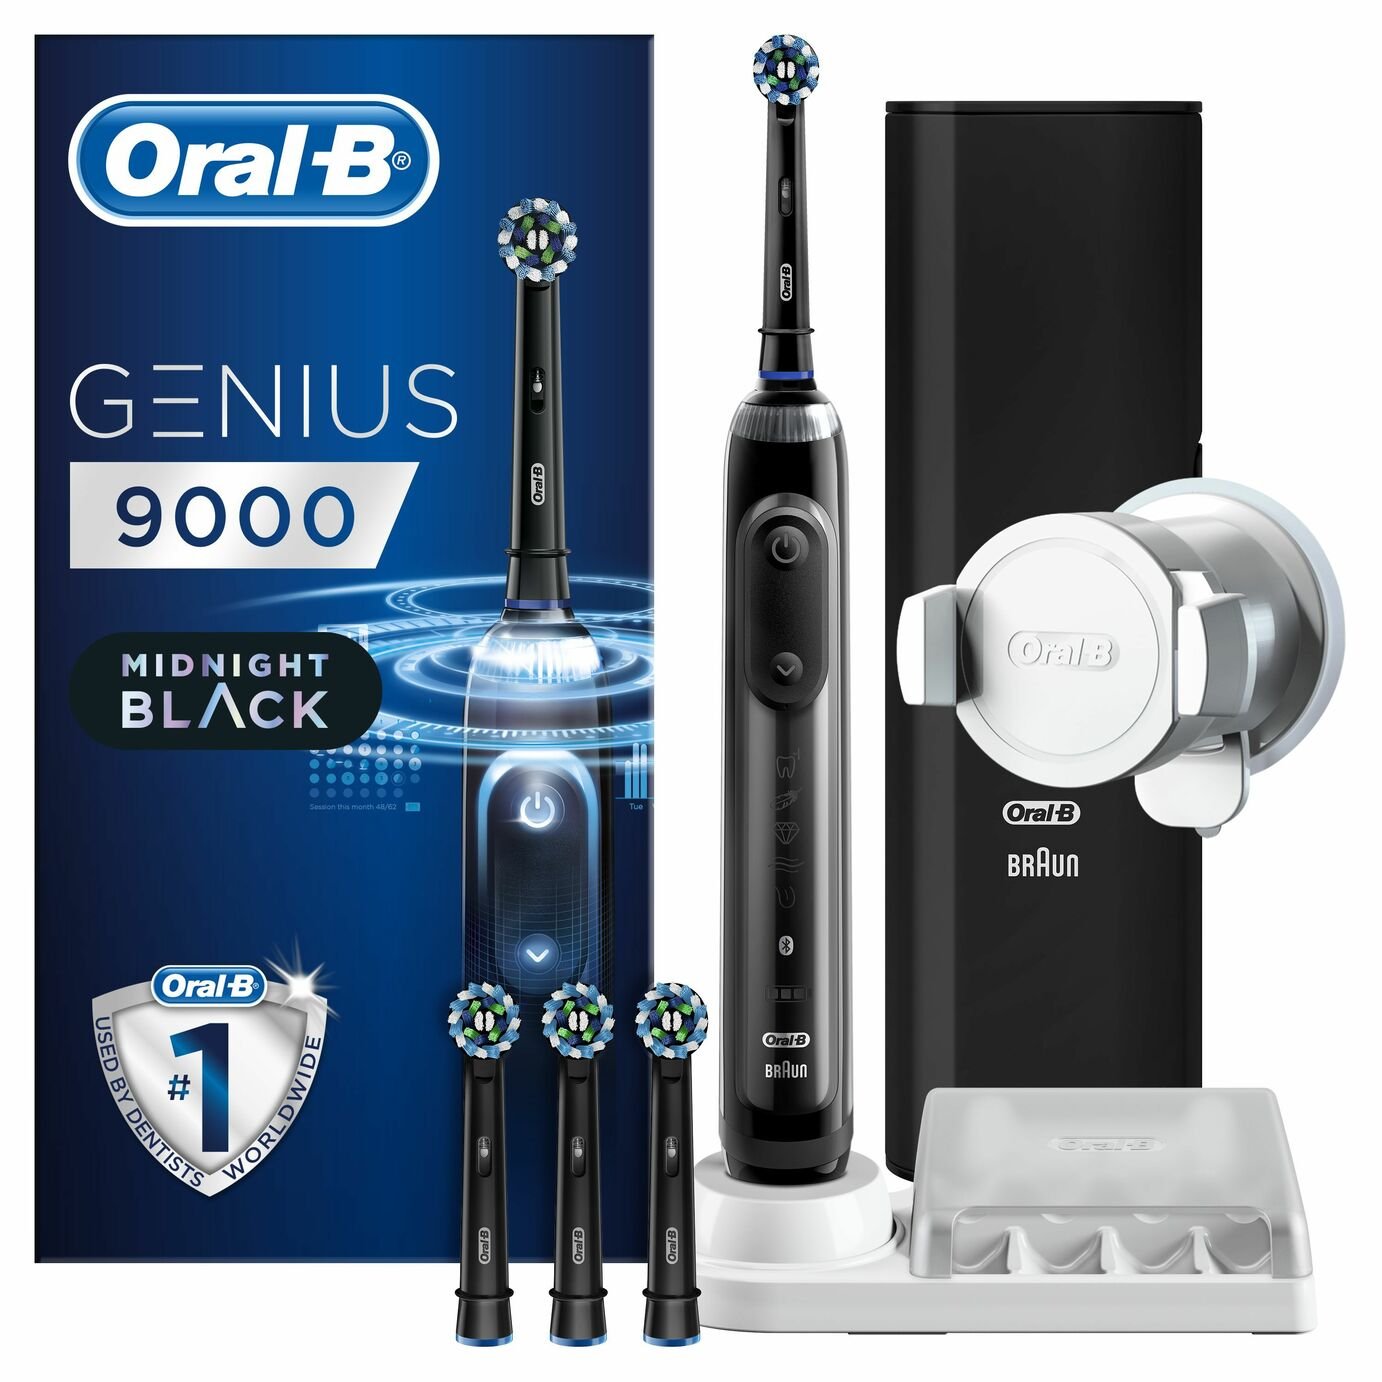 Oral-B Genius 9000 Electric Toothbrush - Deep Clean